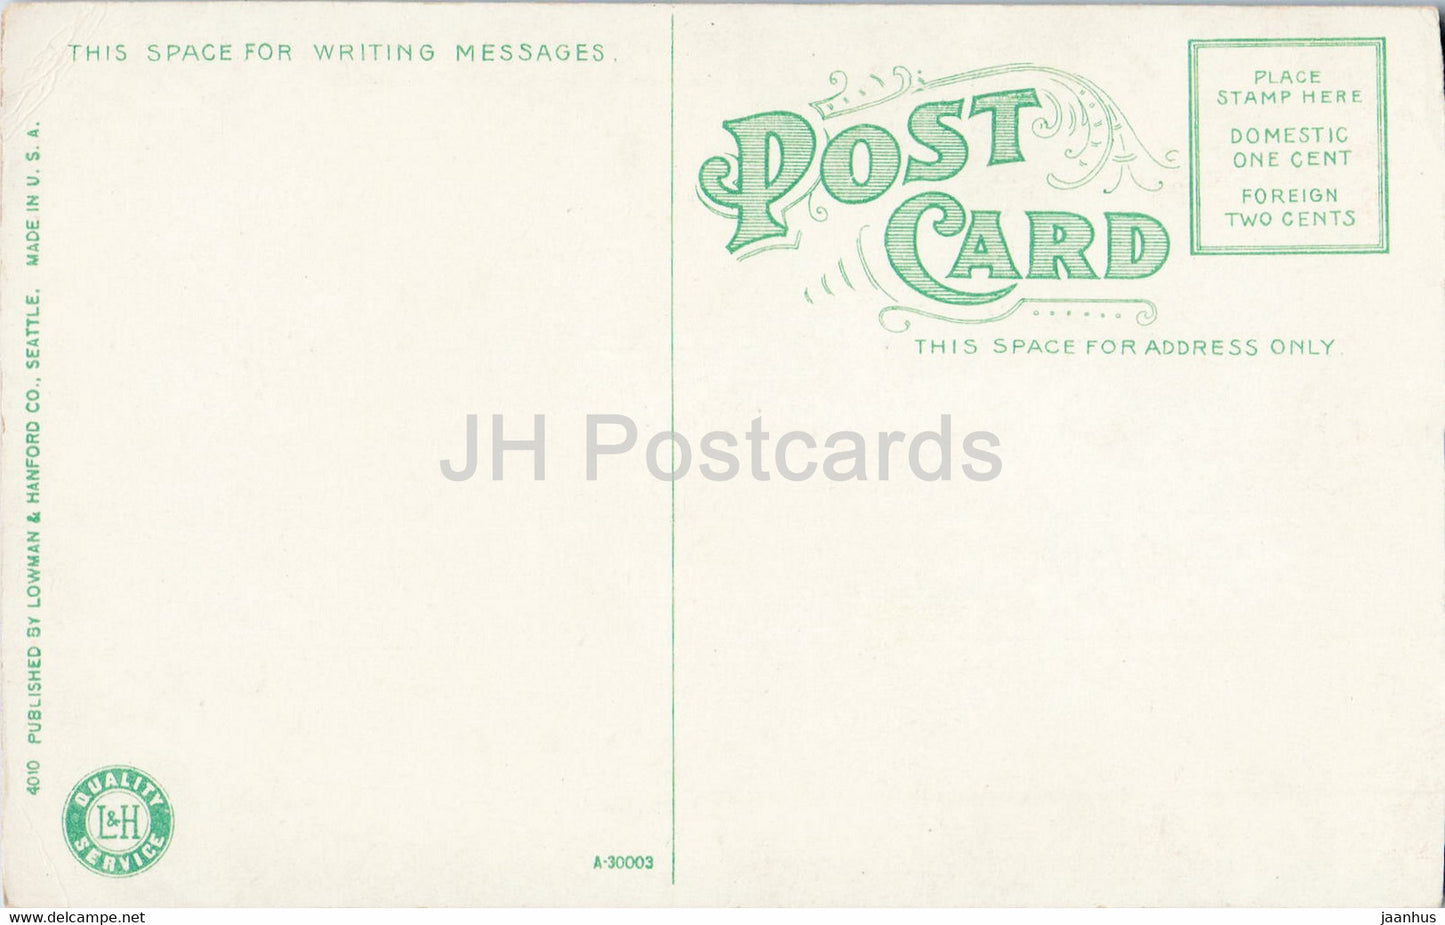 Myrtle Falls und Mount Rainier – Washington – 4010 – alte Postkarte – USA – unbenutzt